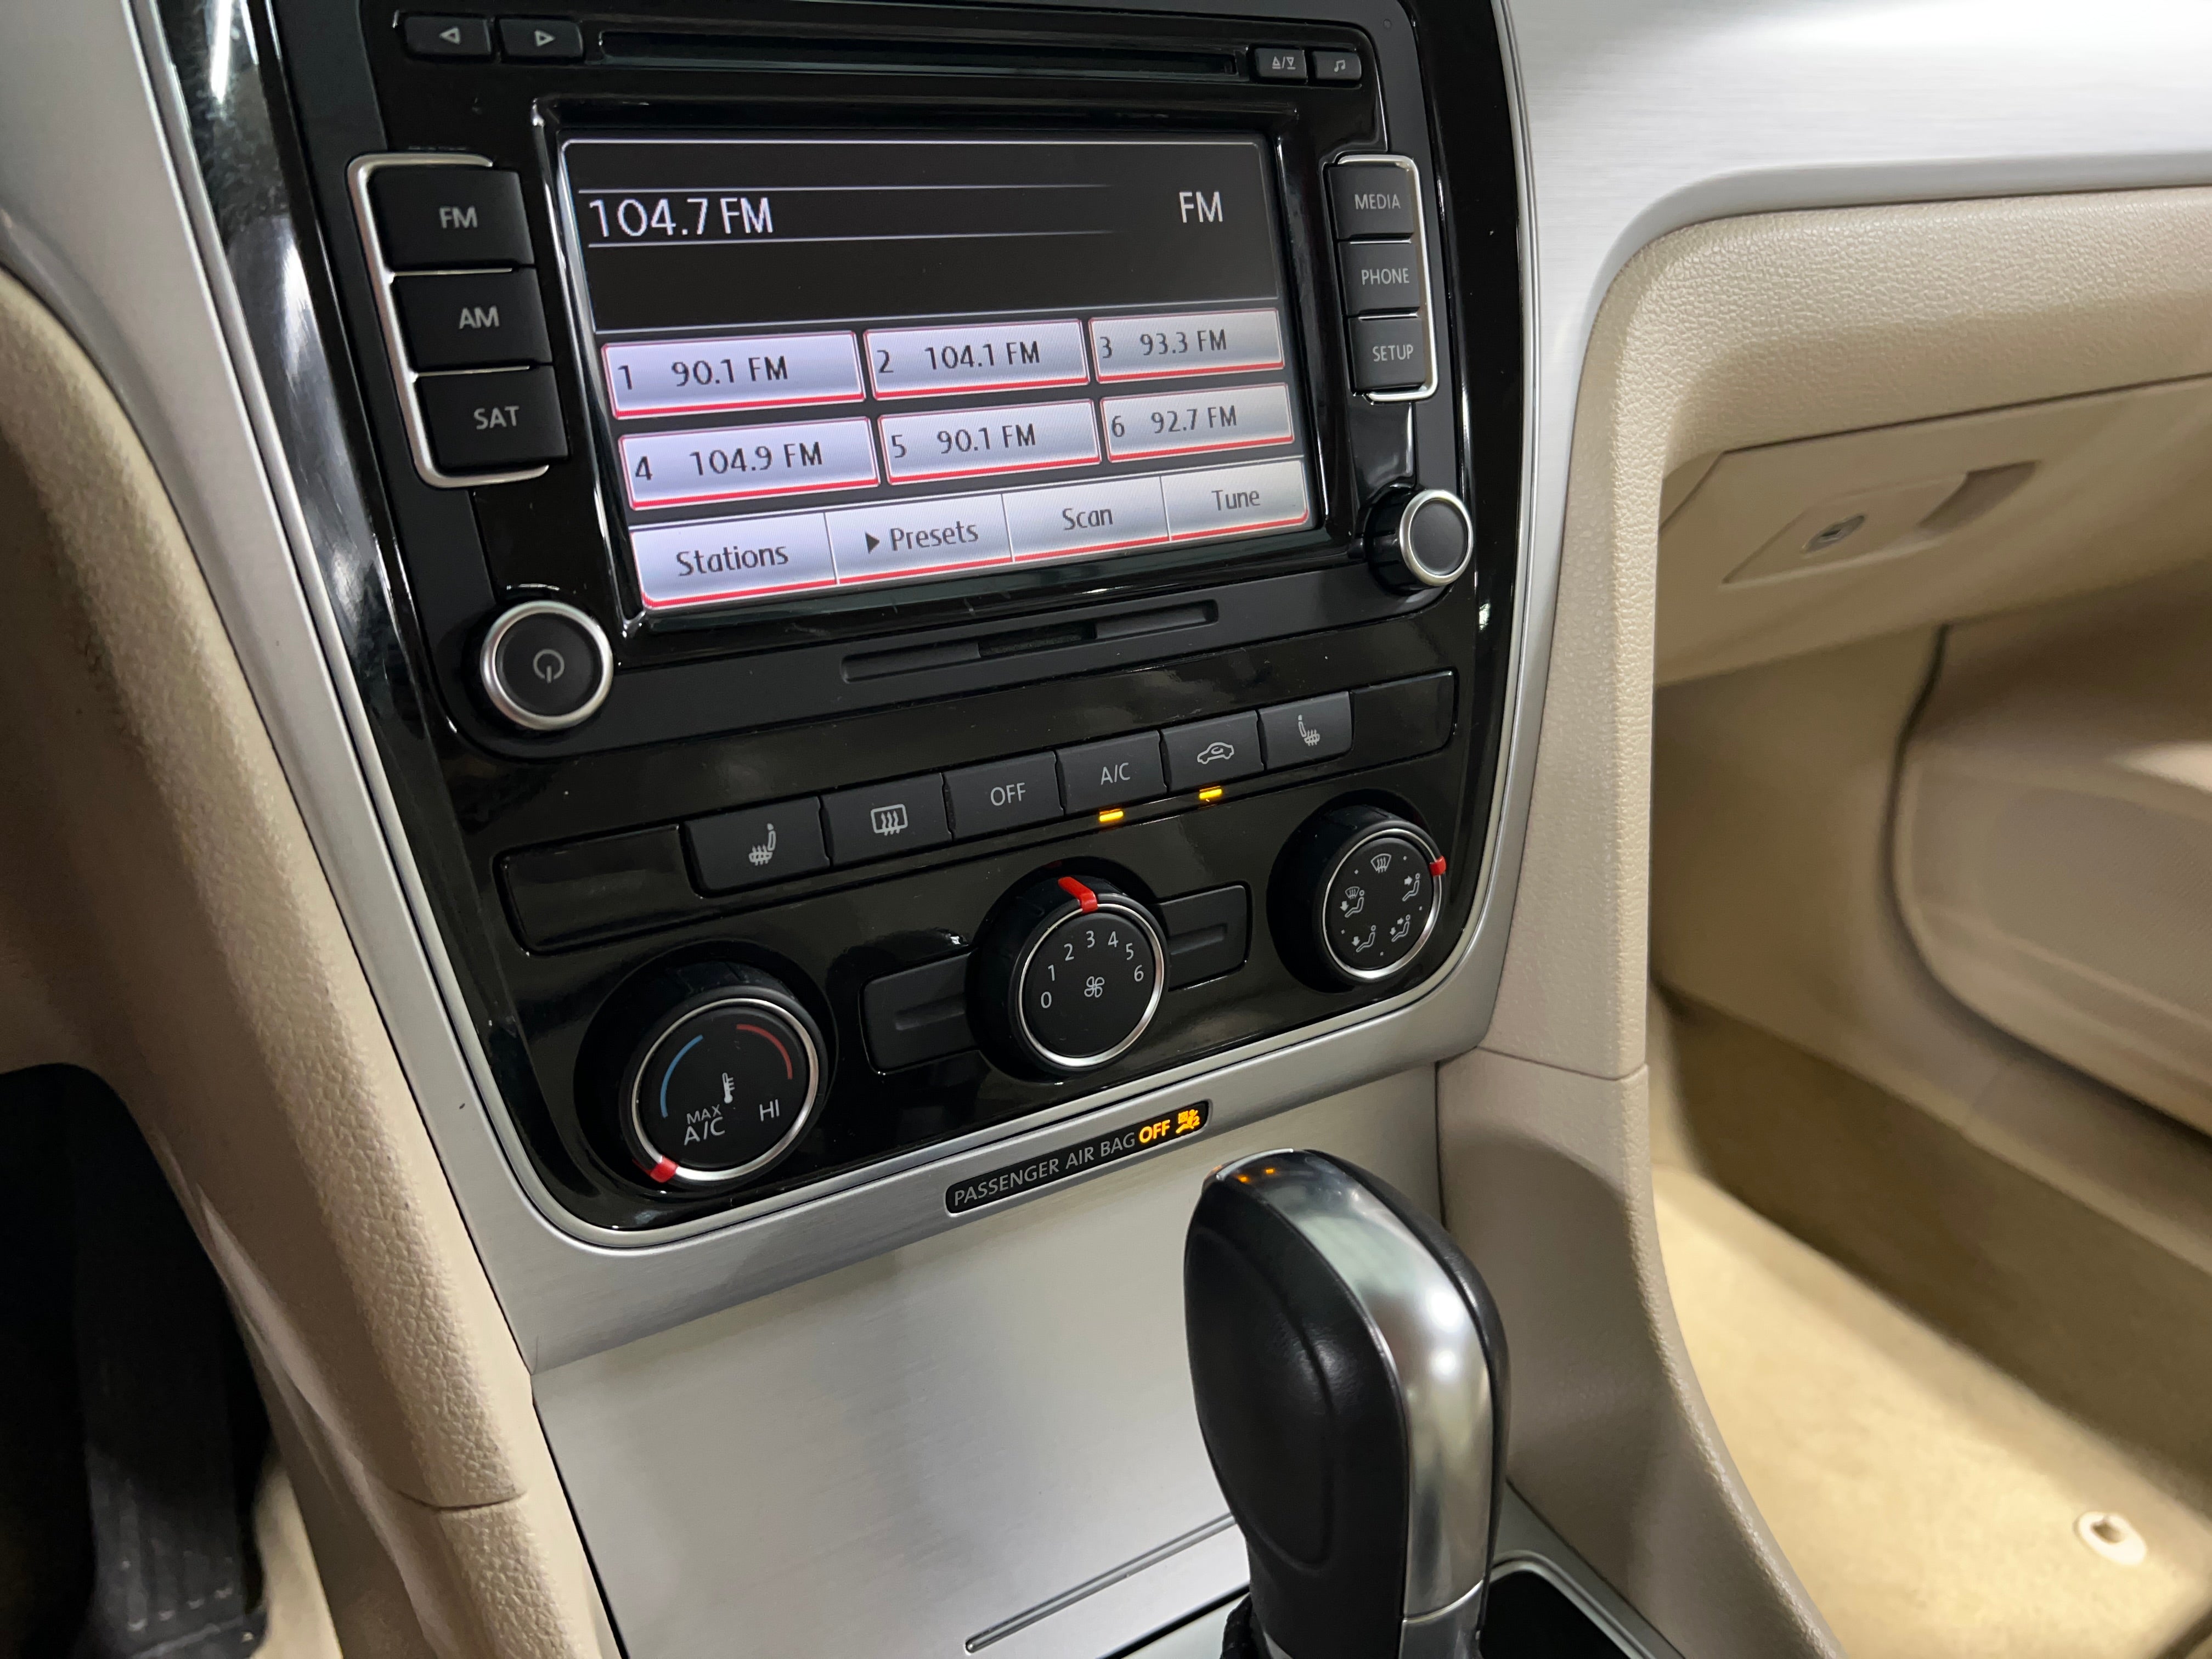 Features of the Volkswagen Passat Interior